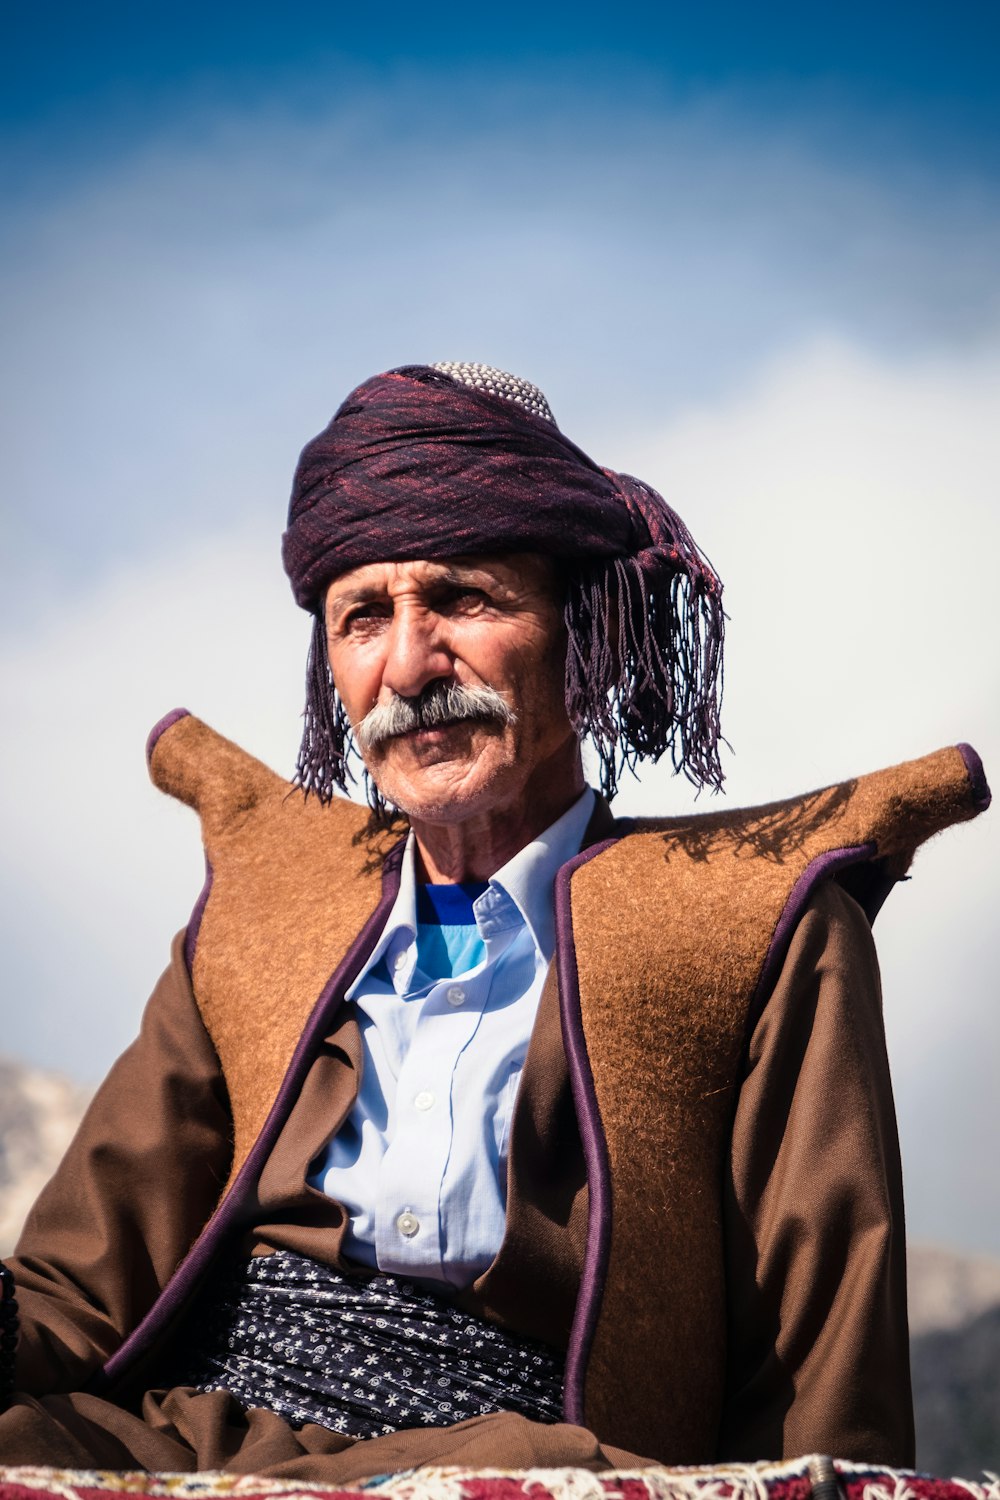 man wearing keffiyeh